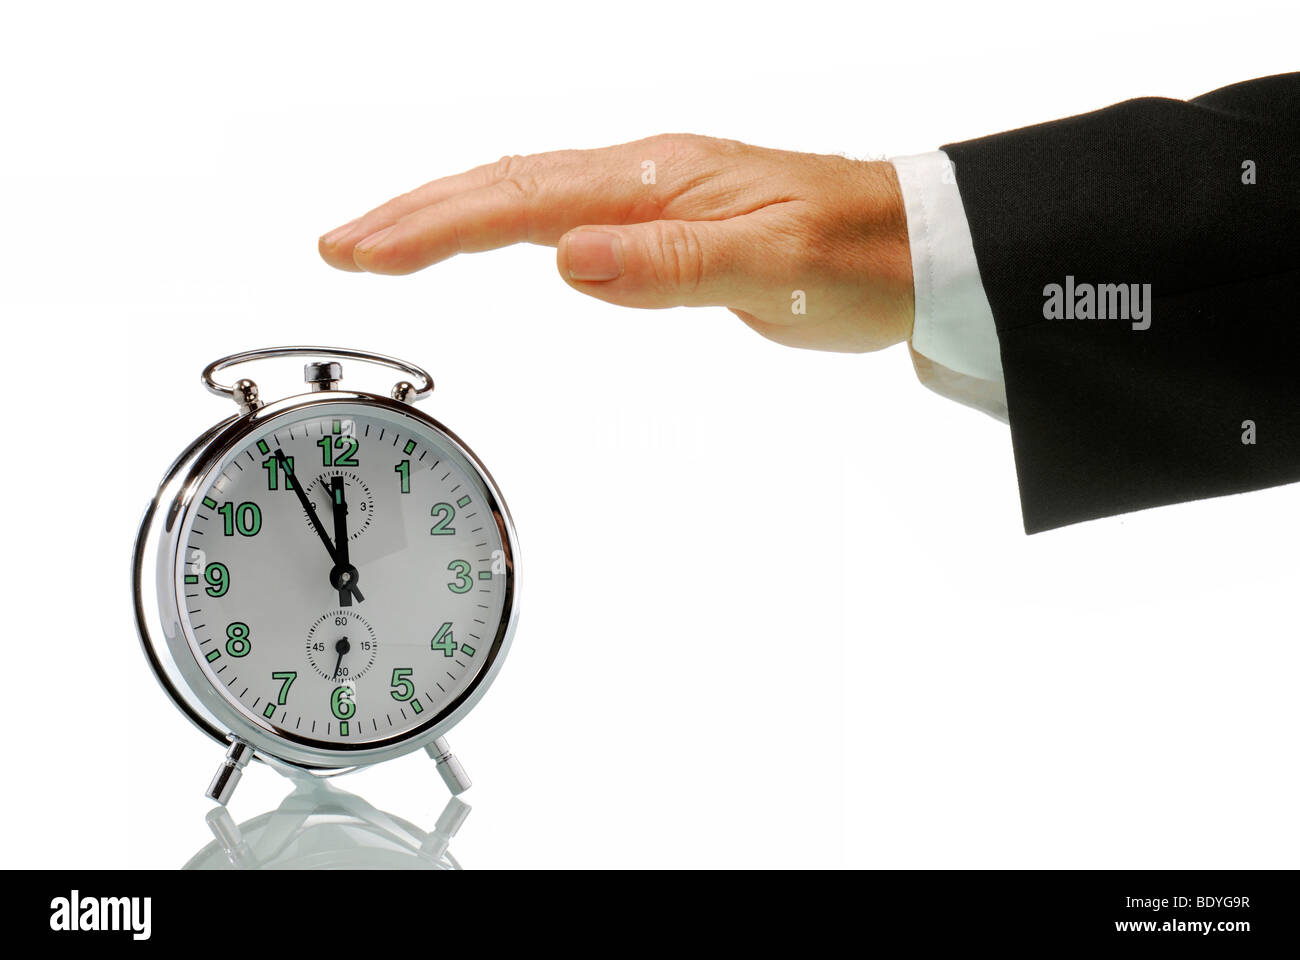 La mano del hombre de negocios con un reloj de alarma ajustado a 5 a 12, justo antes del mediodía, la imagen simbólica de la acción en una crisis Foto de stock